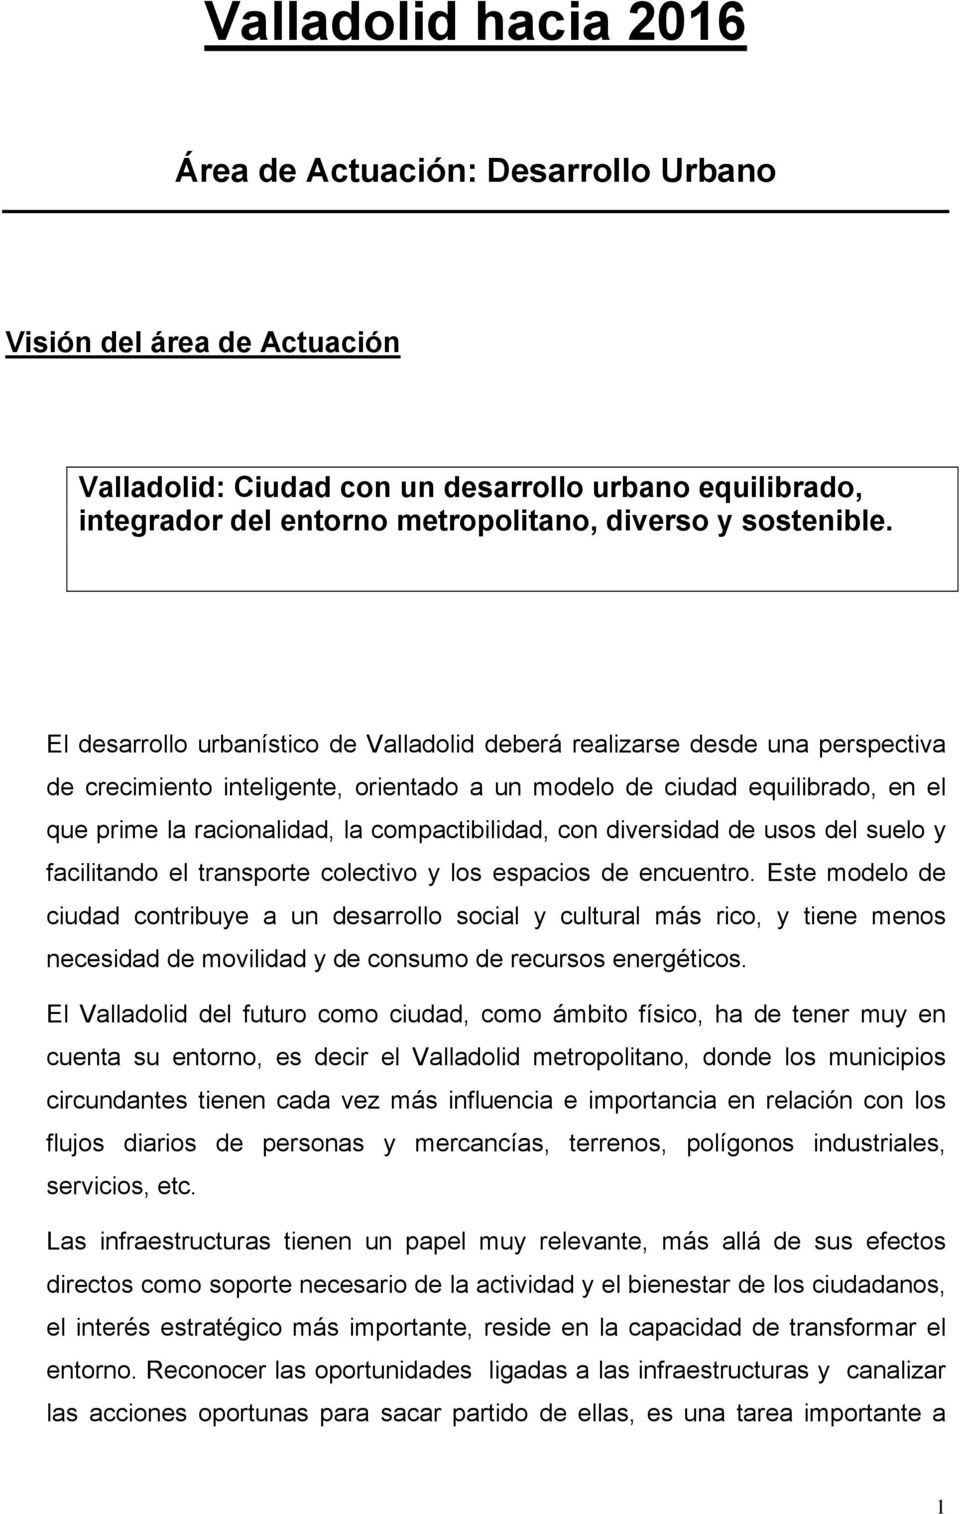 El desarrollo urbanístico de Valladolid deberá realizarse desde una perspectiva de crecimiento inteligente, orientado a un modelo de ciudad equilibrado, en el que prime la racionalidad, la